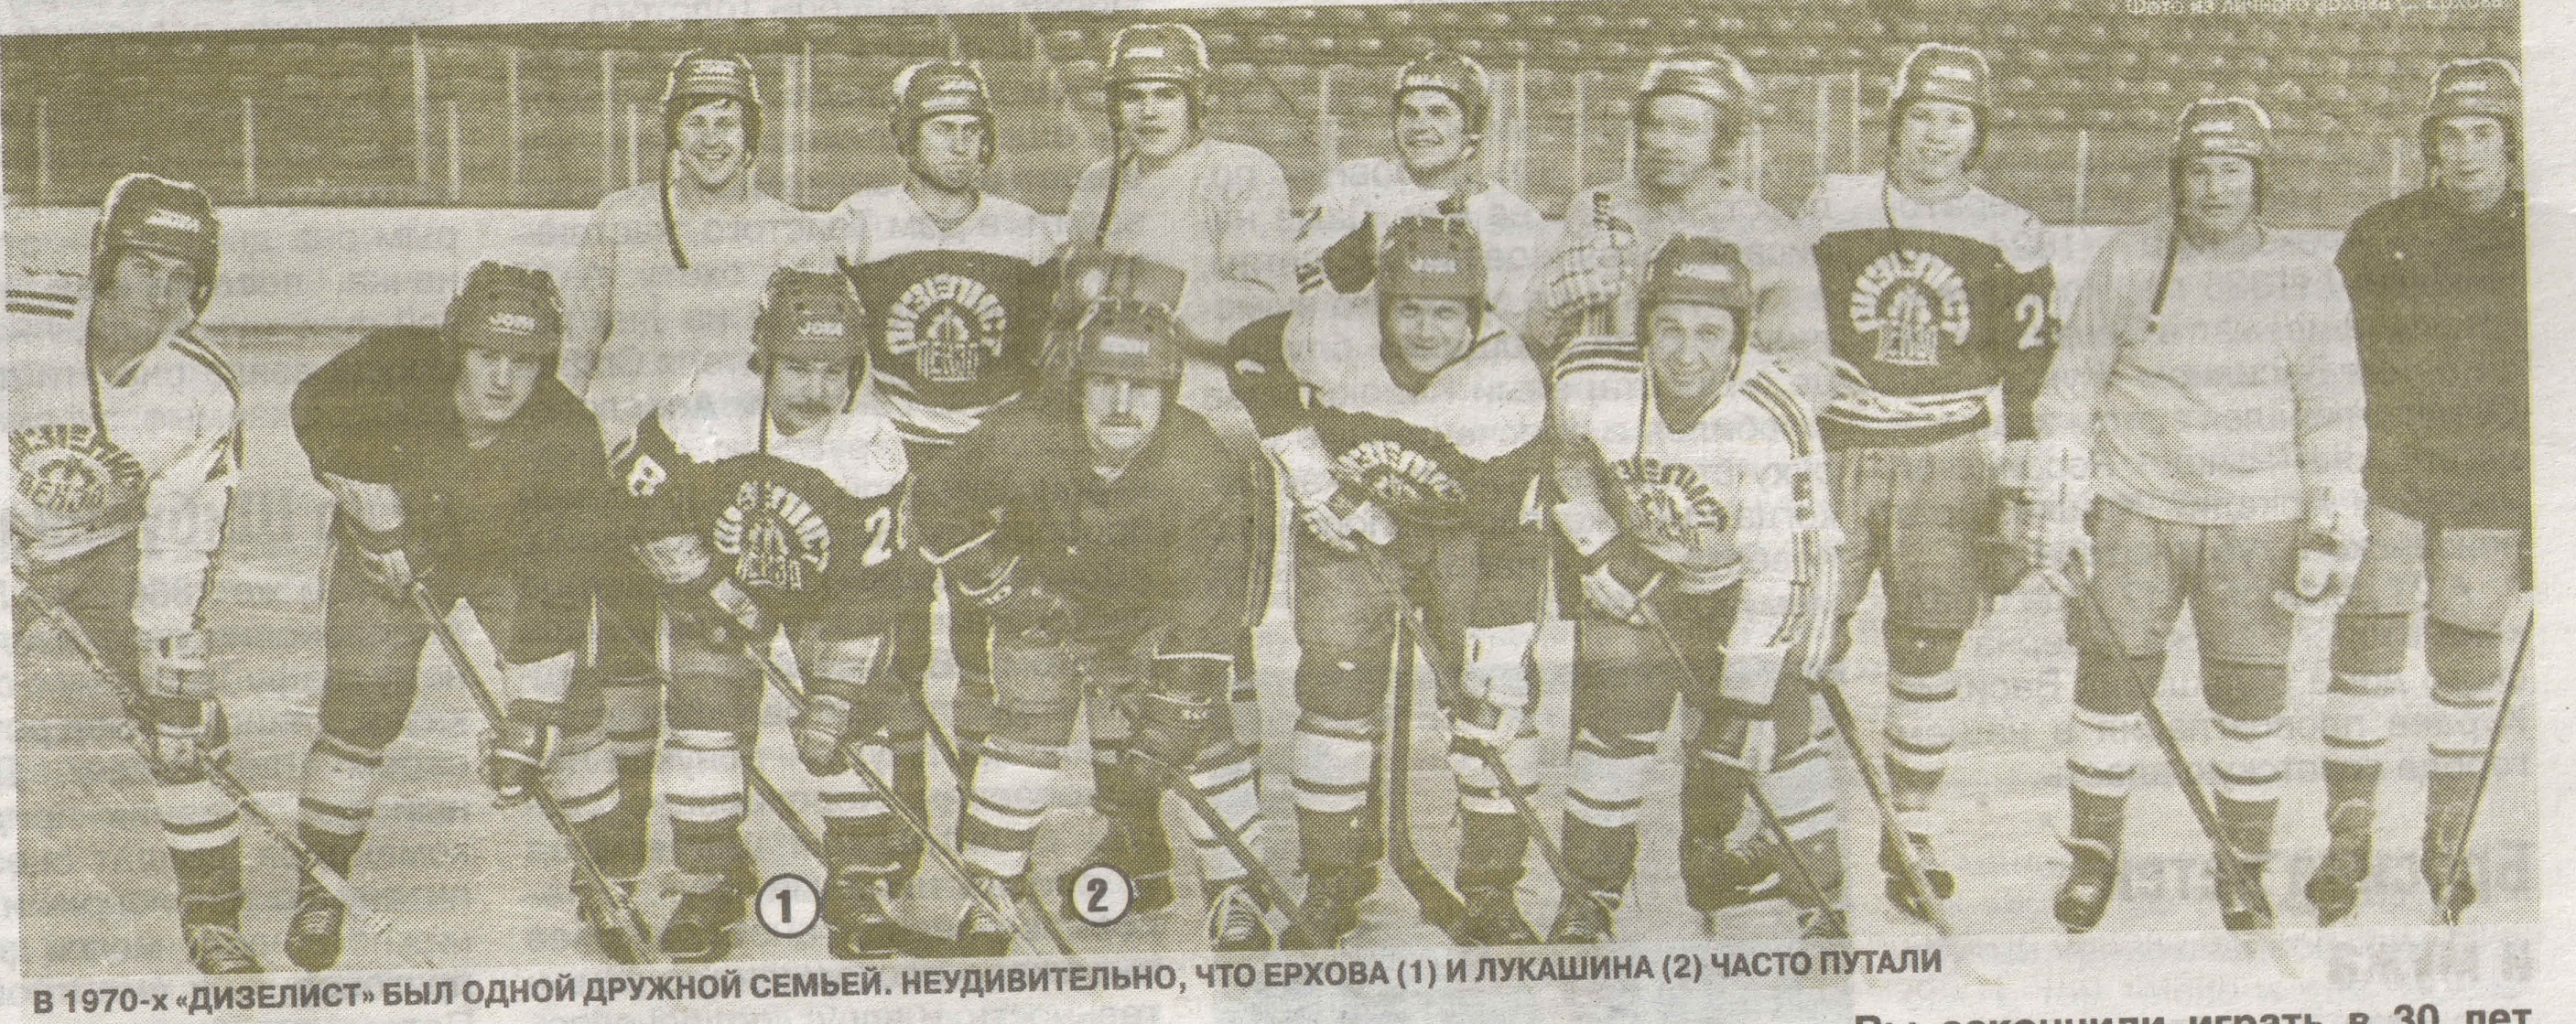 1981 год родились. Дизелист Пенза хоккей СССР. Хоккей Дизелист Пенза 80-е. Дизелист Пенза хоккей СССР форма. Дизелист.